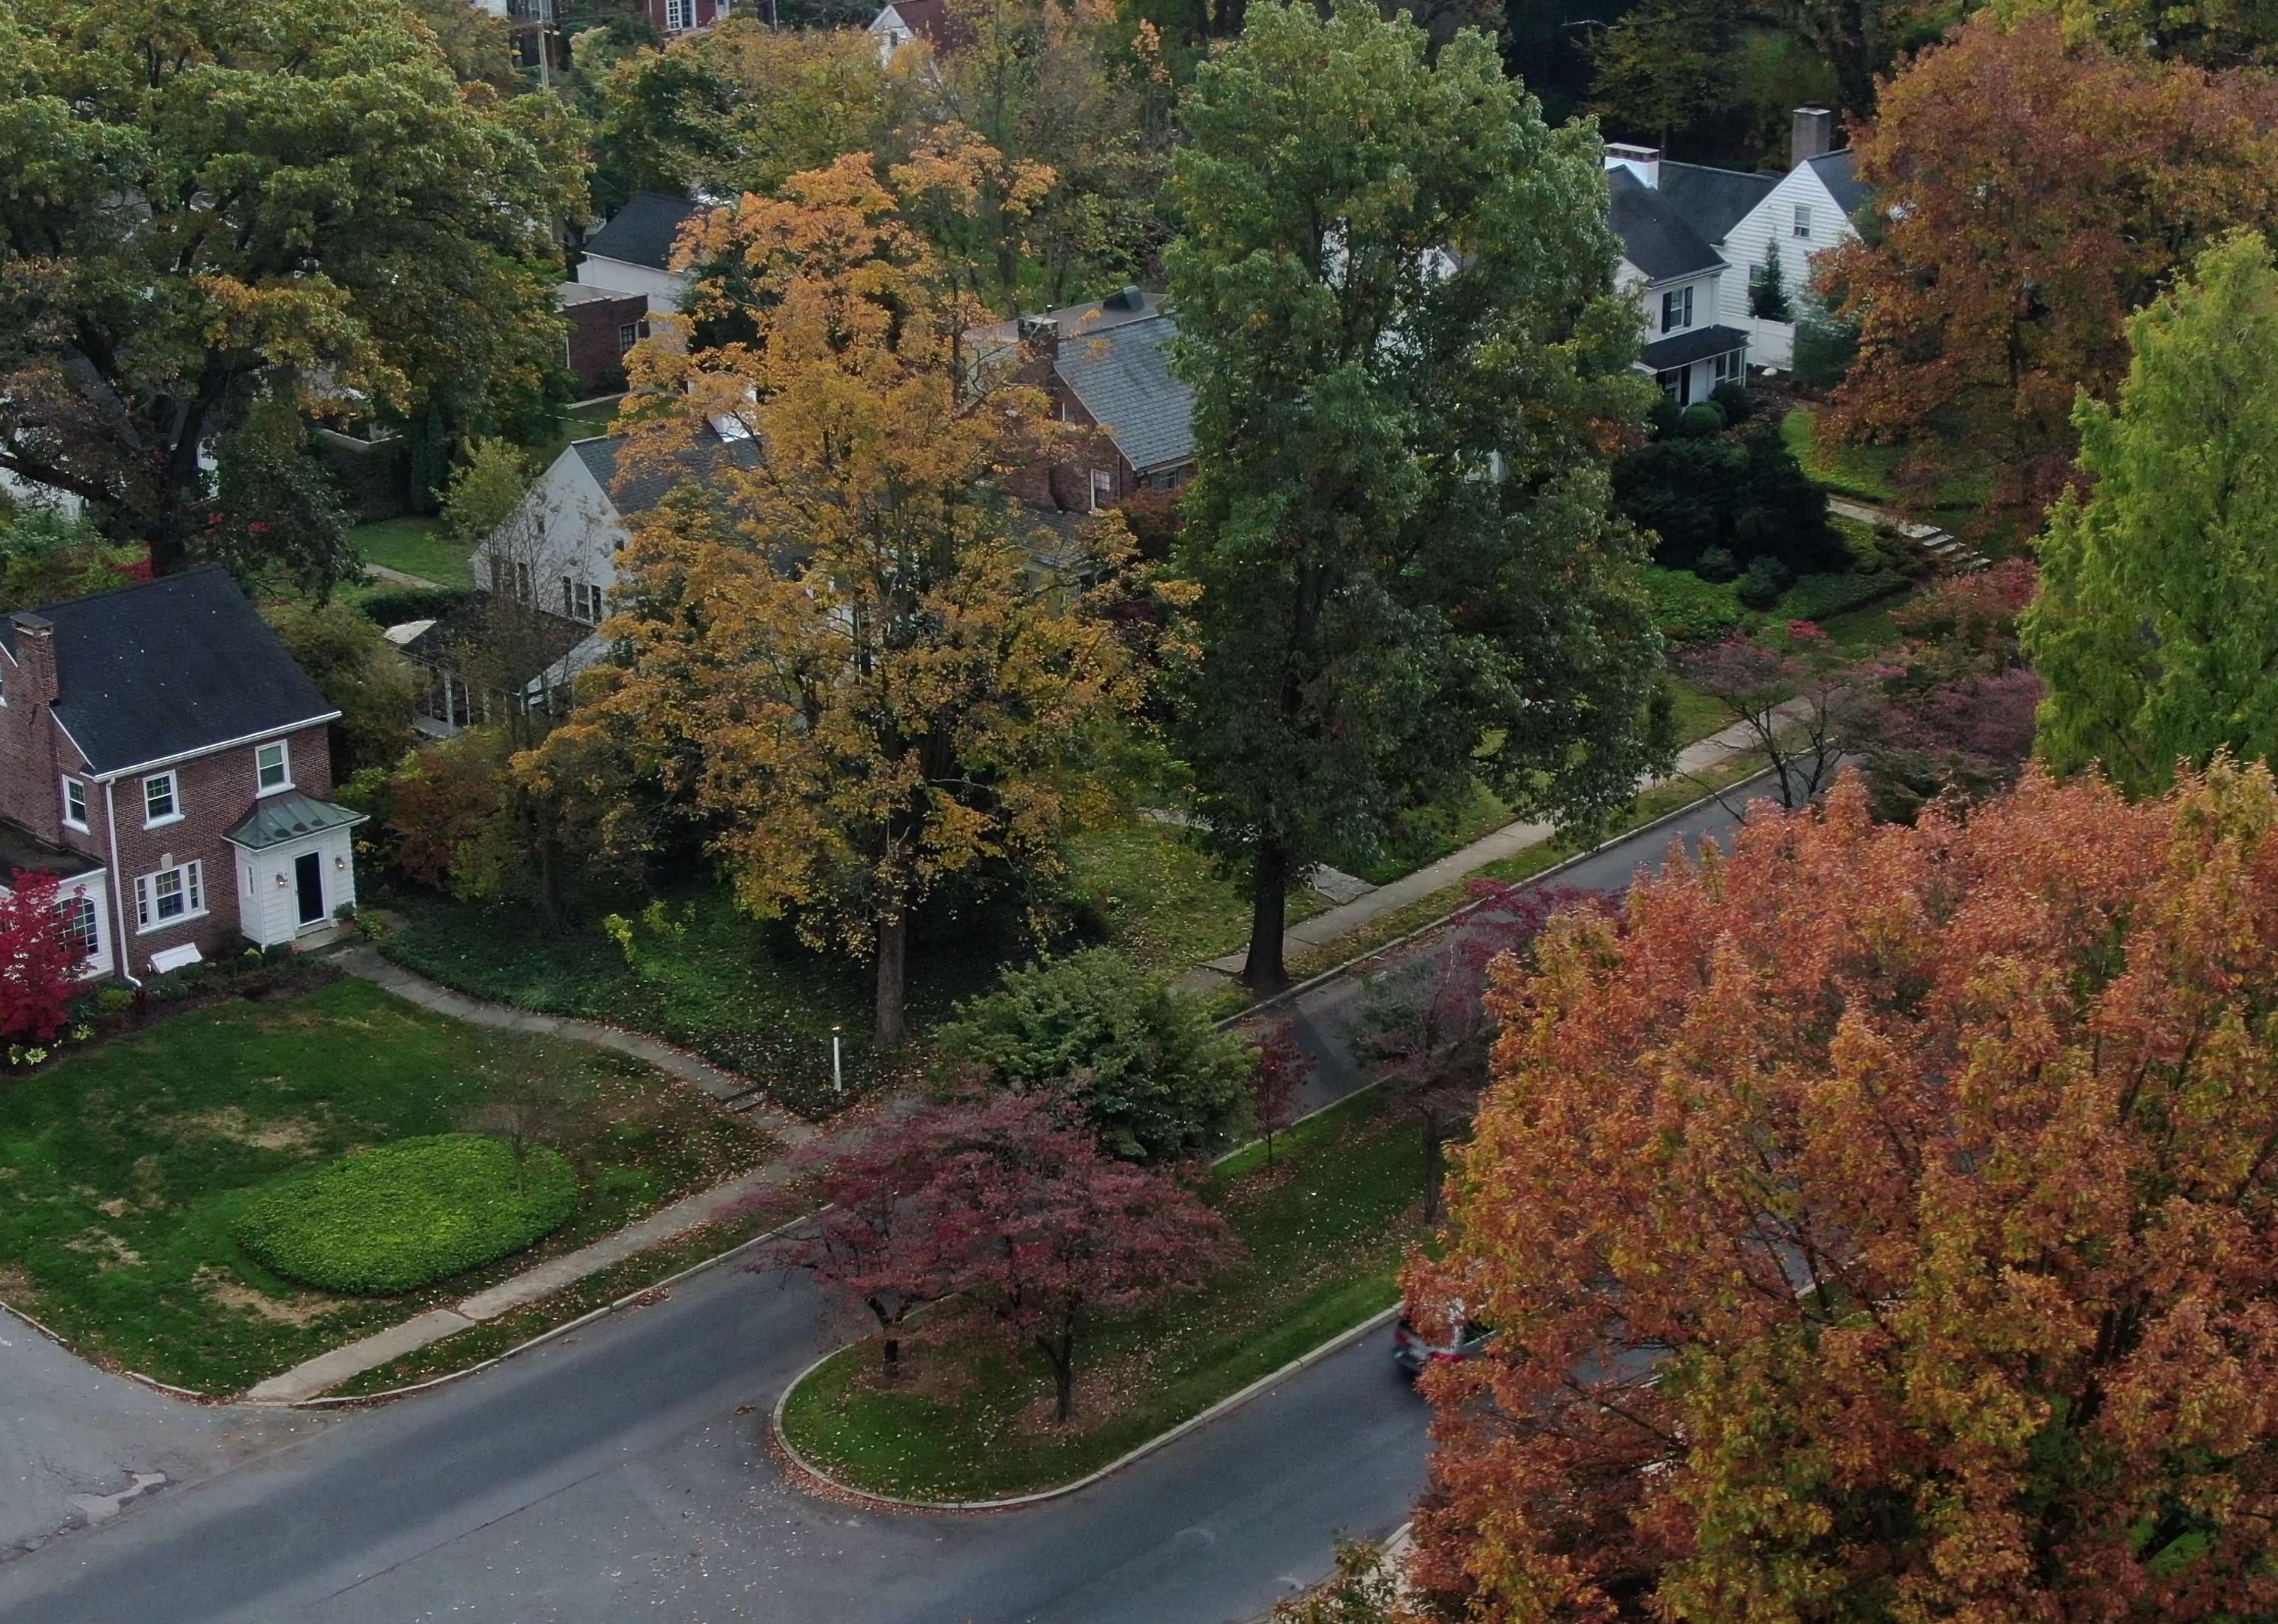 Aerial view of suburban community in autumn.